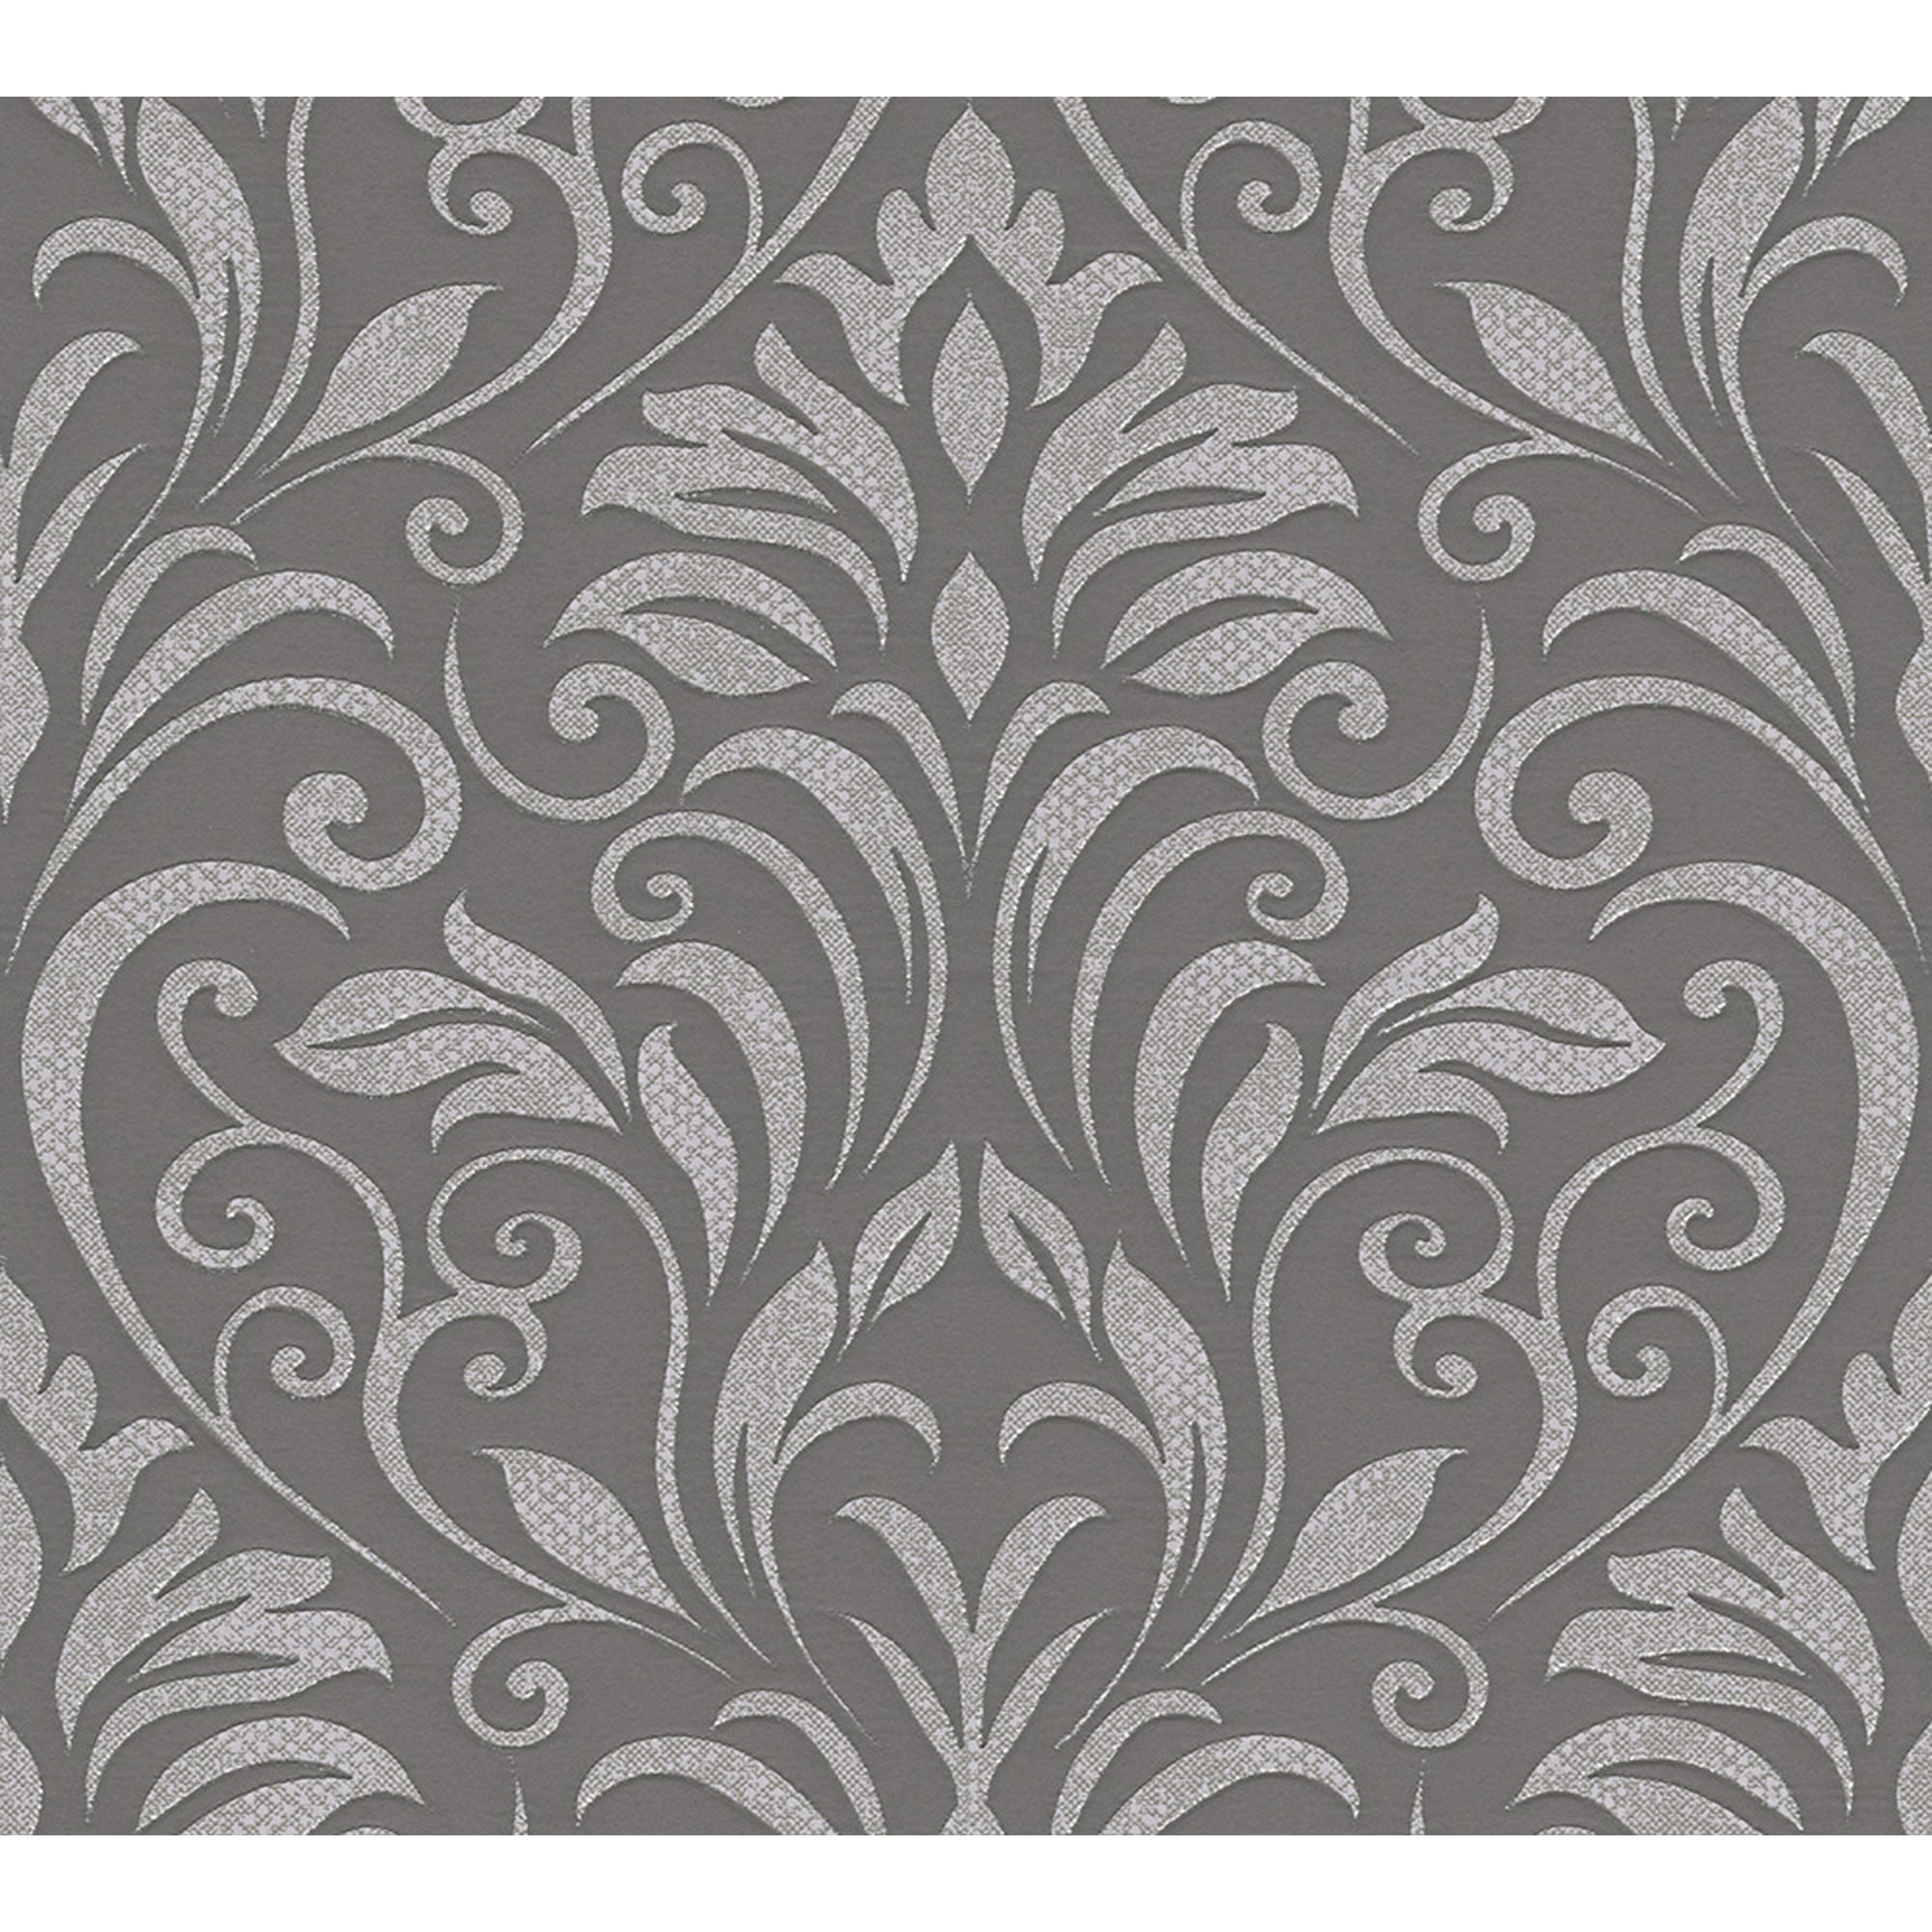 Moments - Baroque motifs, Flowers and Garlands Grey Wallpaper Roll, Modern  | Walmart Canada